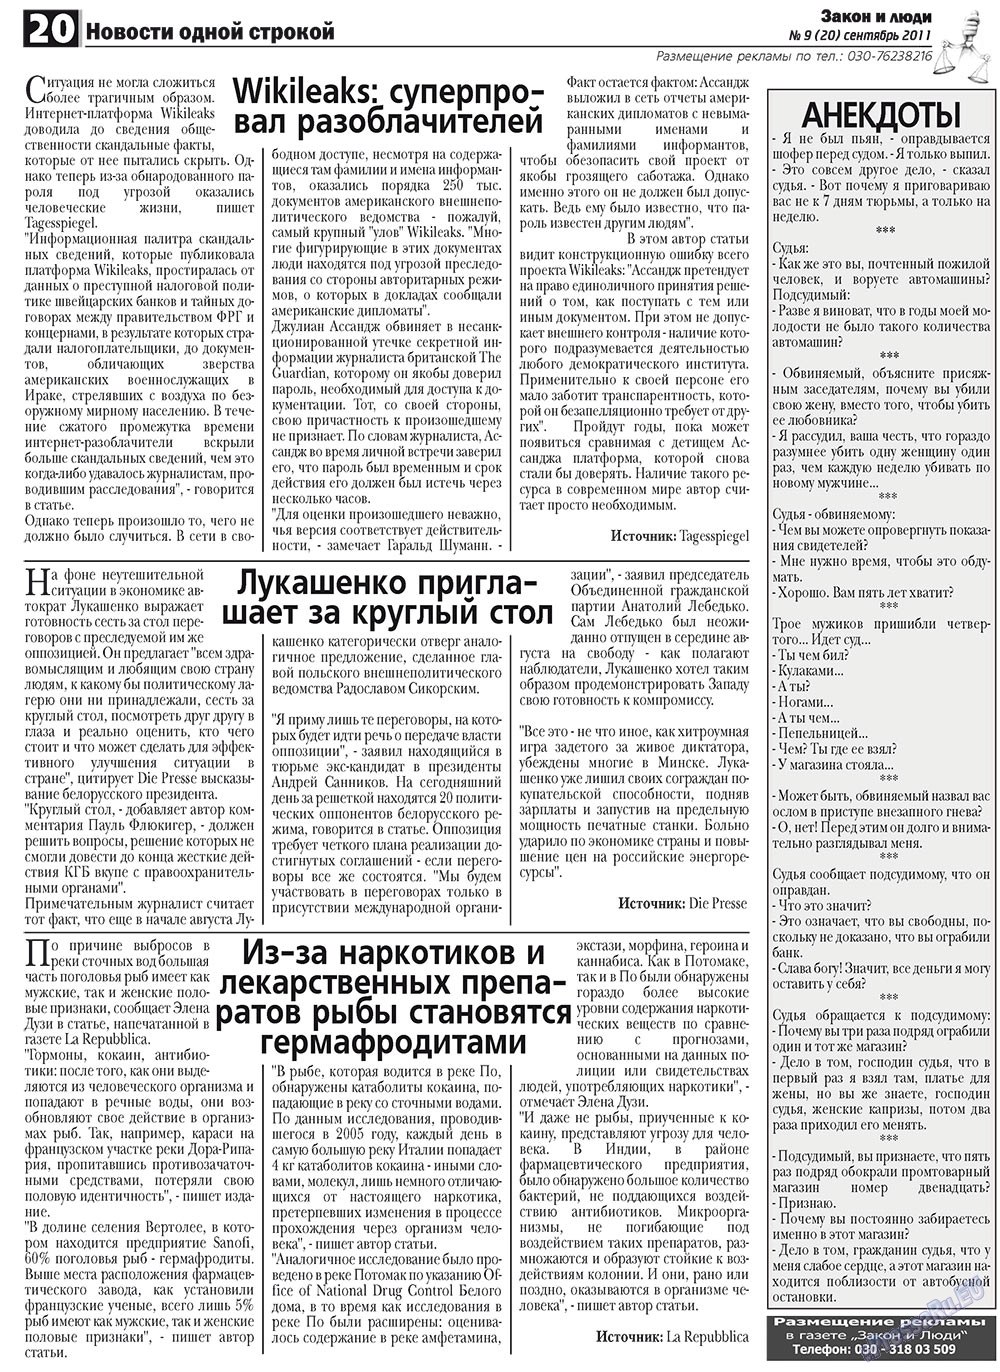 Закон и люди, газета. 2011 №9 стр.20